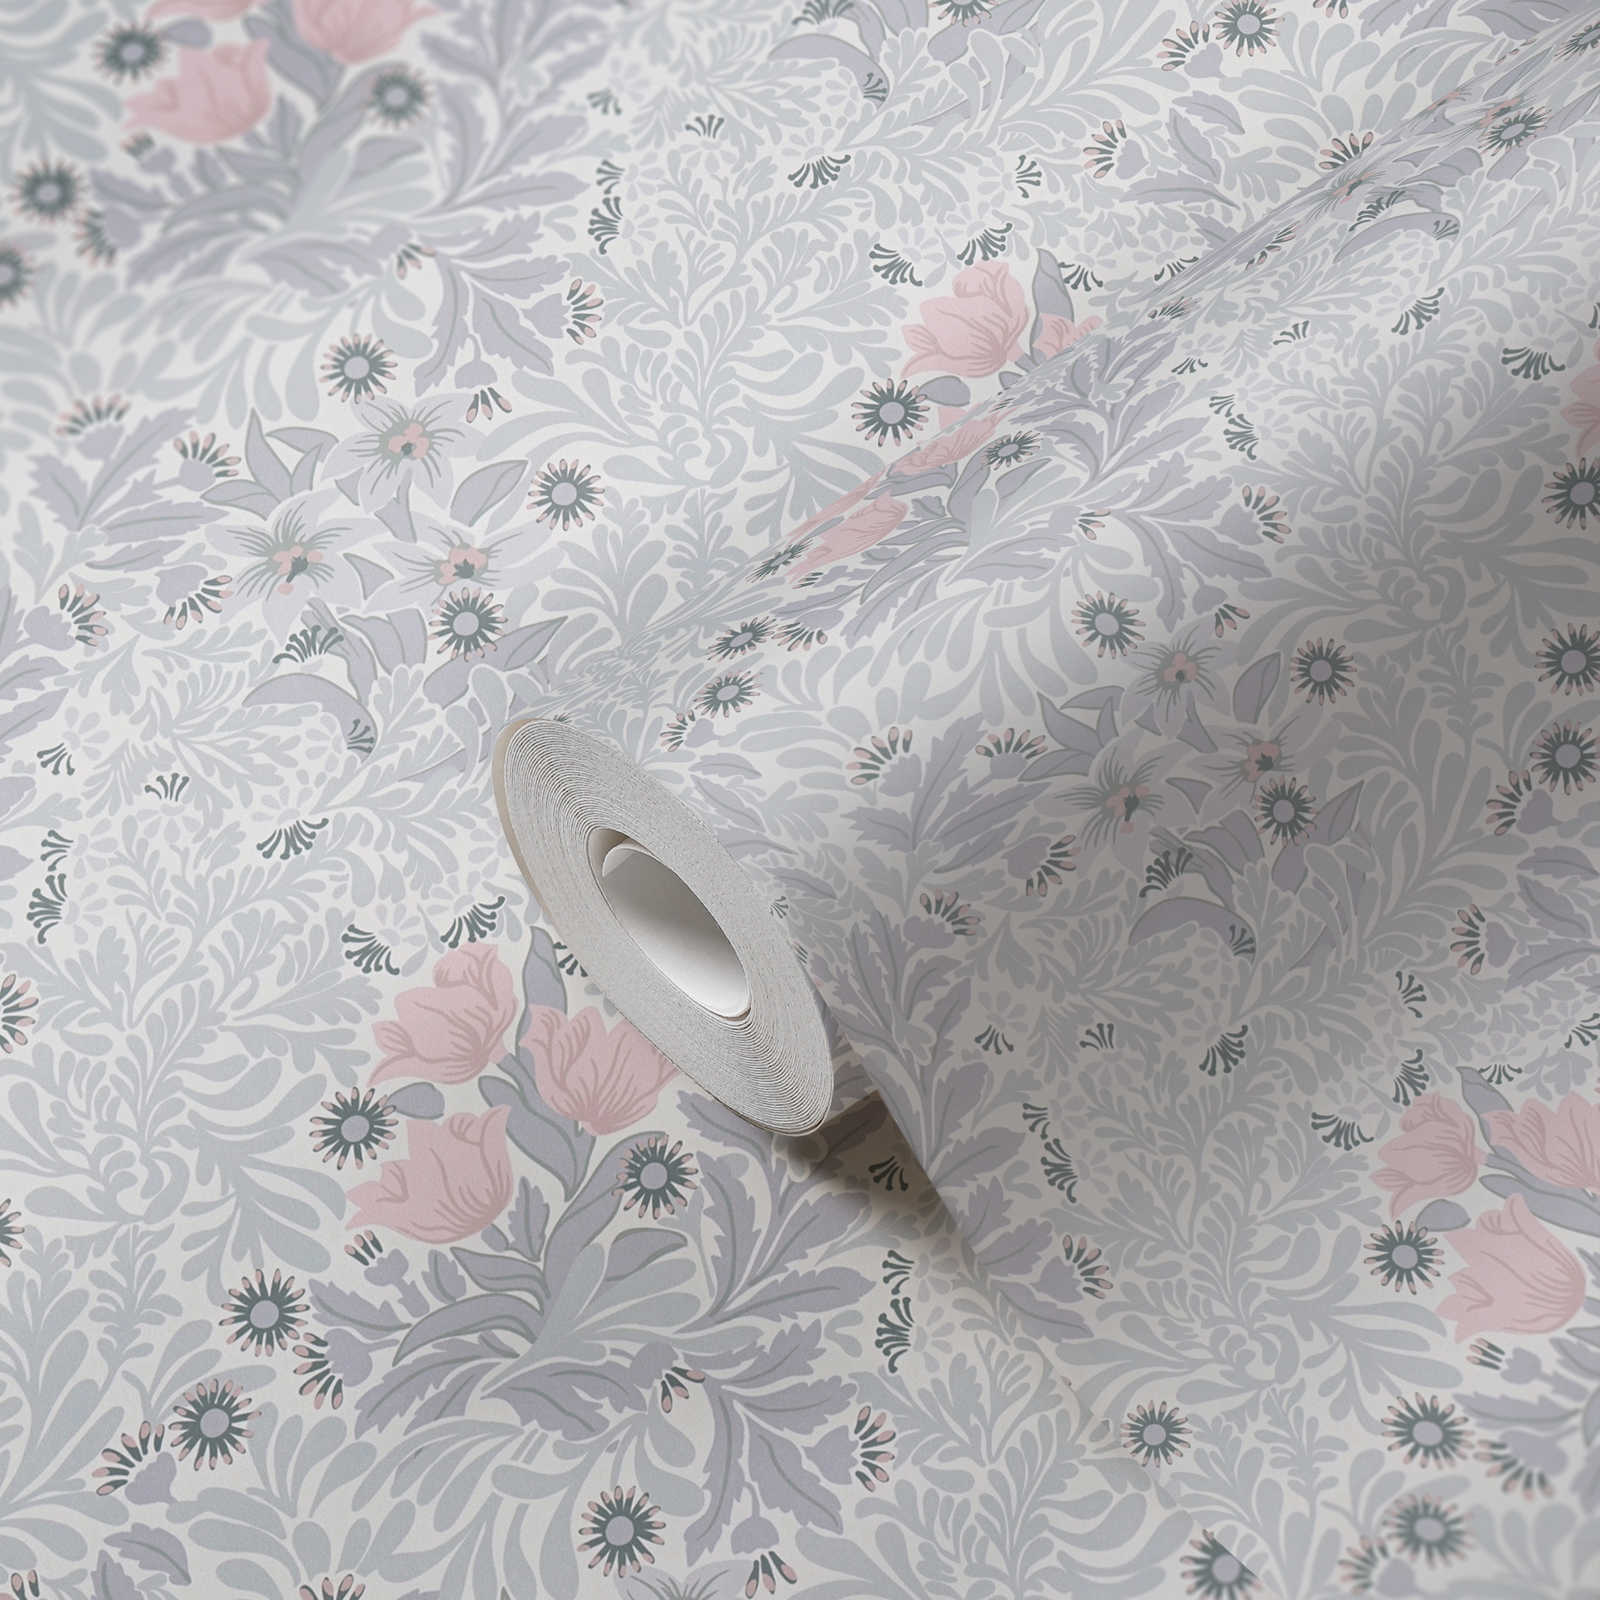             Vliestapete mit floralem Muster in sanften Farbtönen – Grau, Rosa, Weiß
        